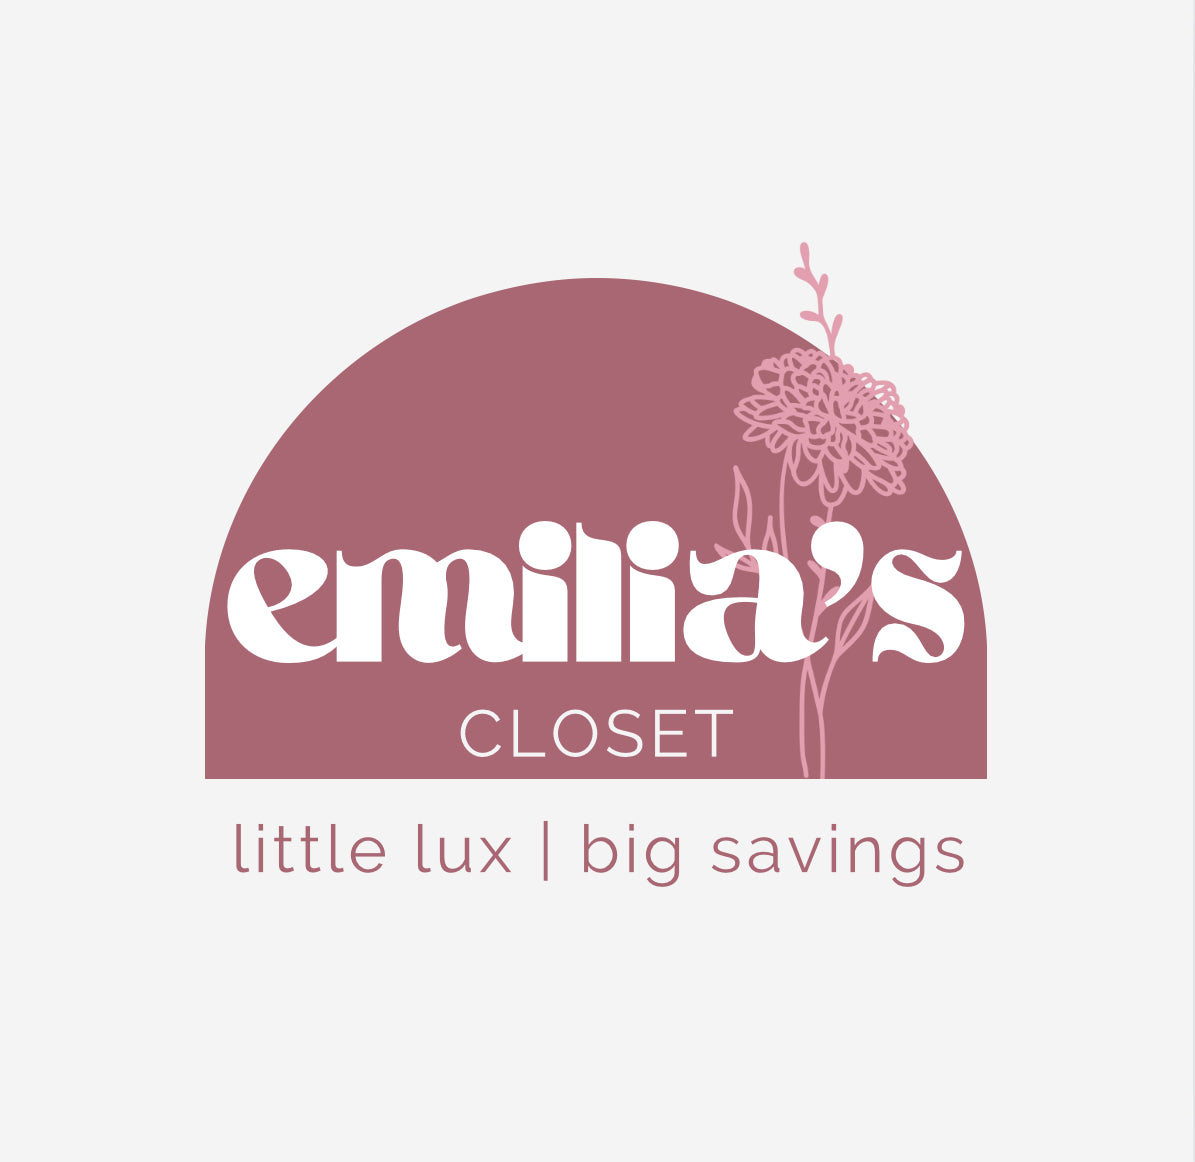 Emilia's Closet